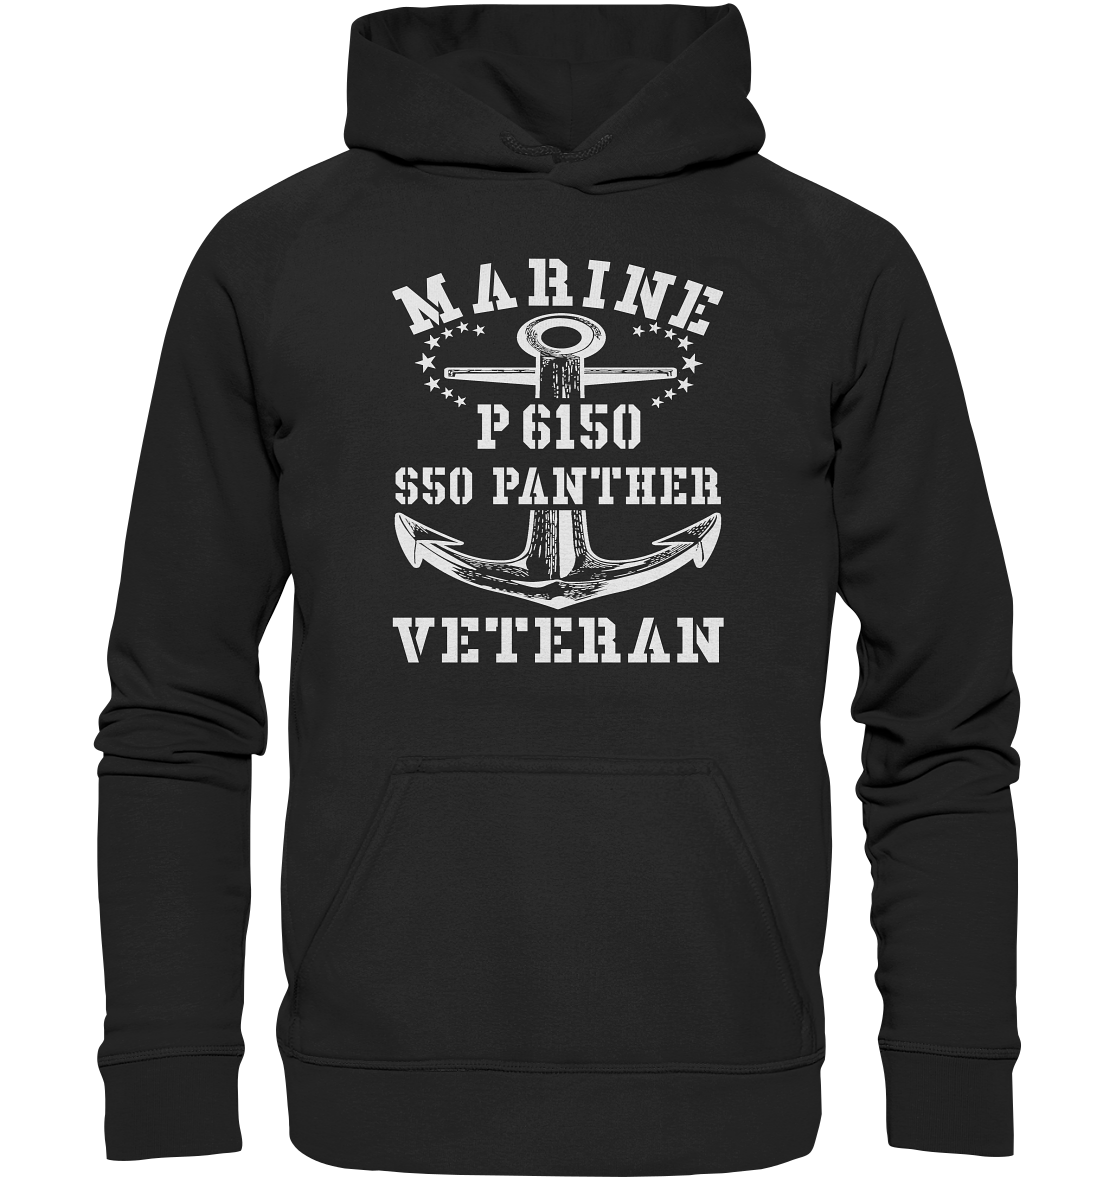 P6150 S50 PANTHER Marine Veteran - Basic Unisex Hoodie XL